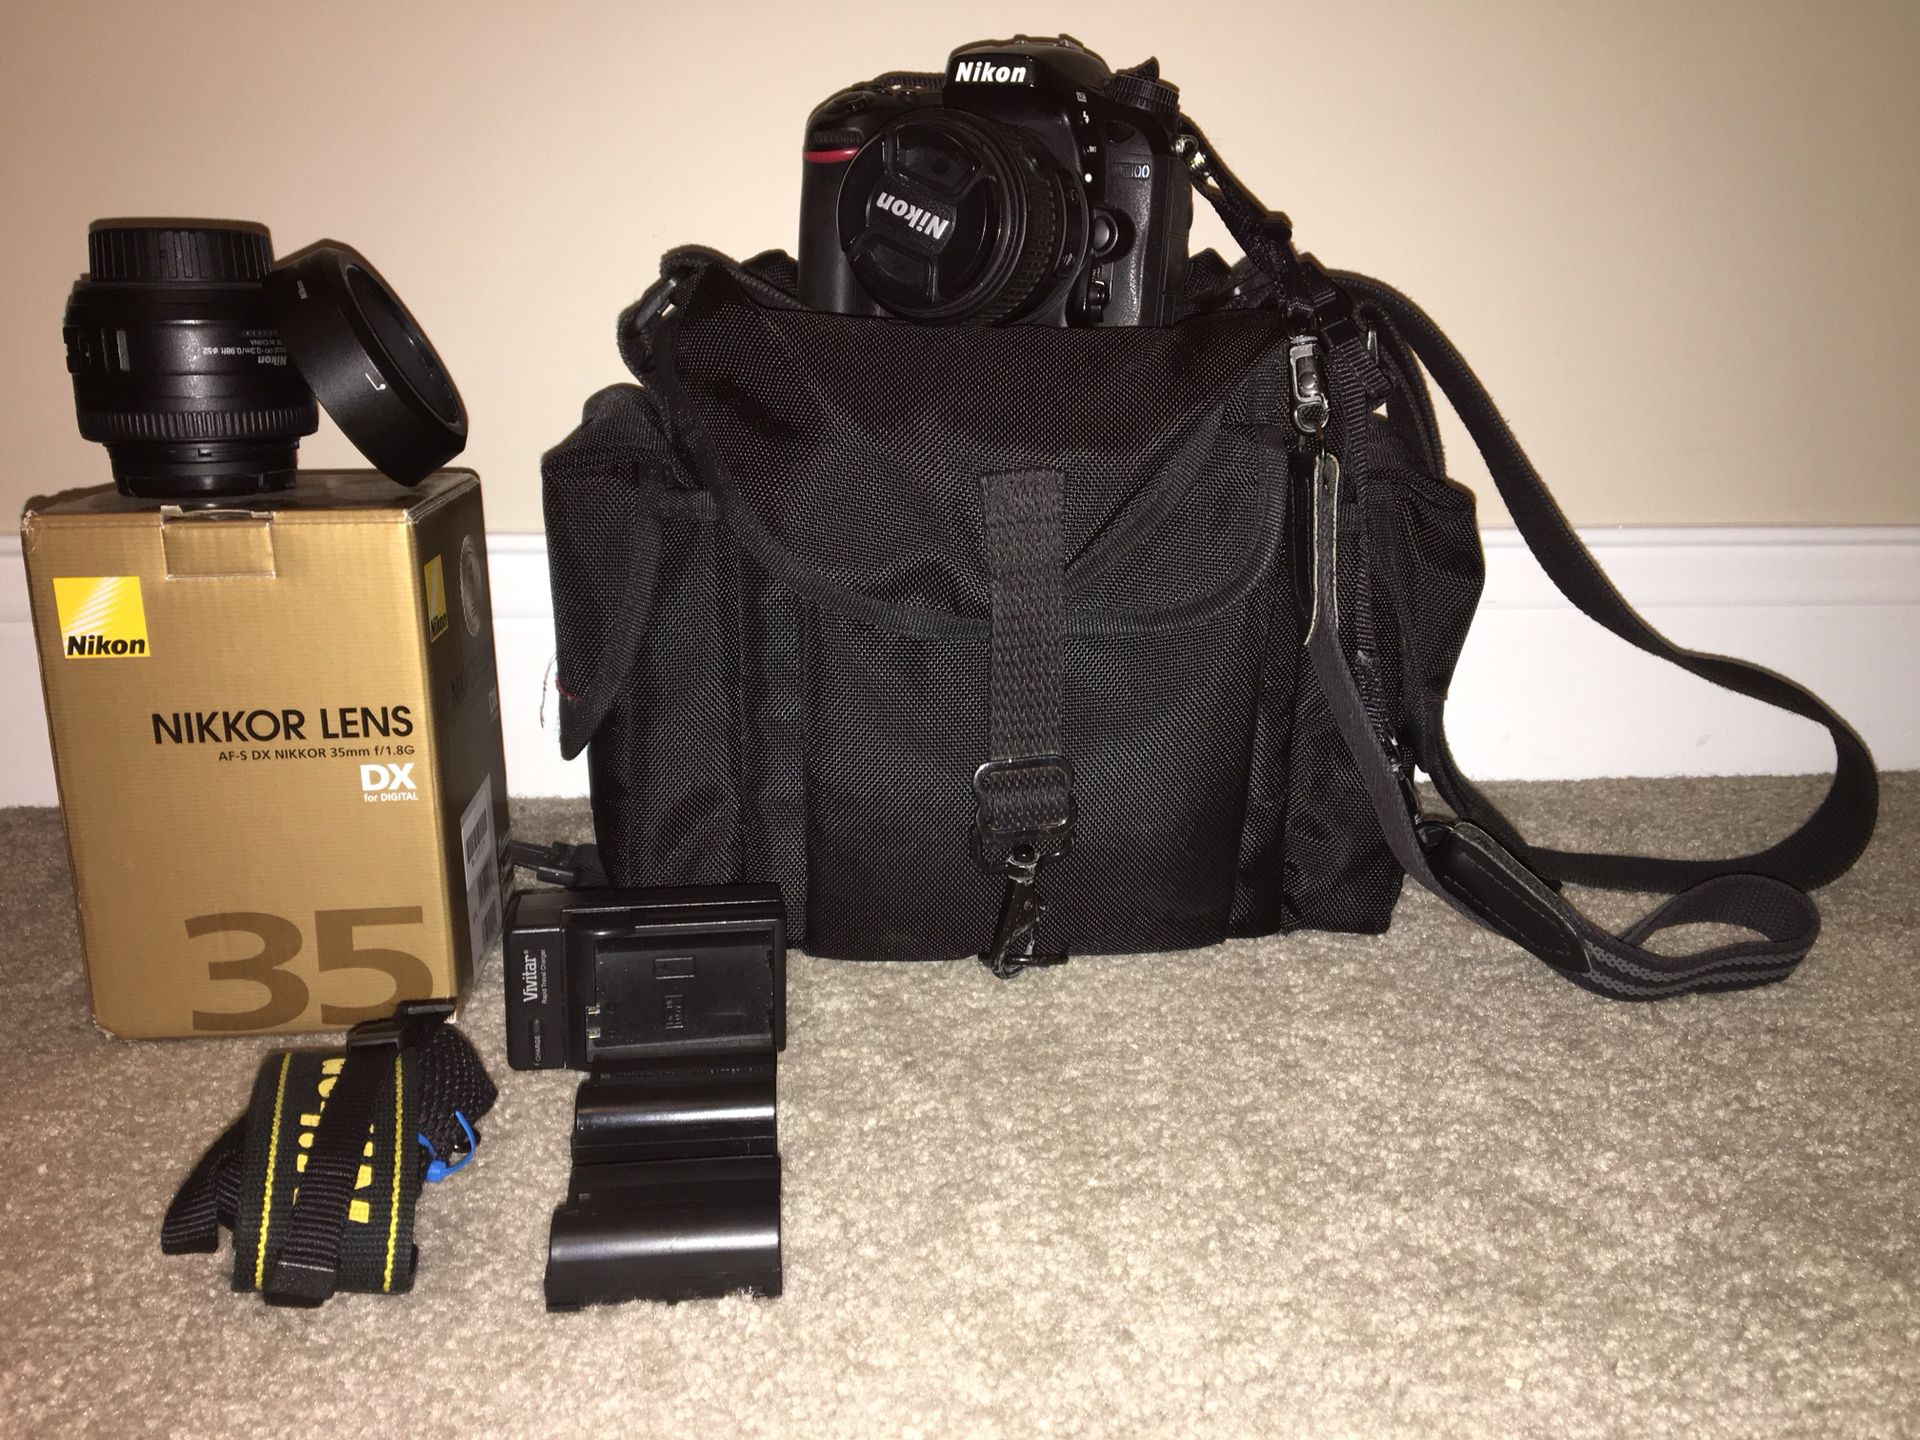 Nikon D7100 Camera, Lenses and Accessories